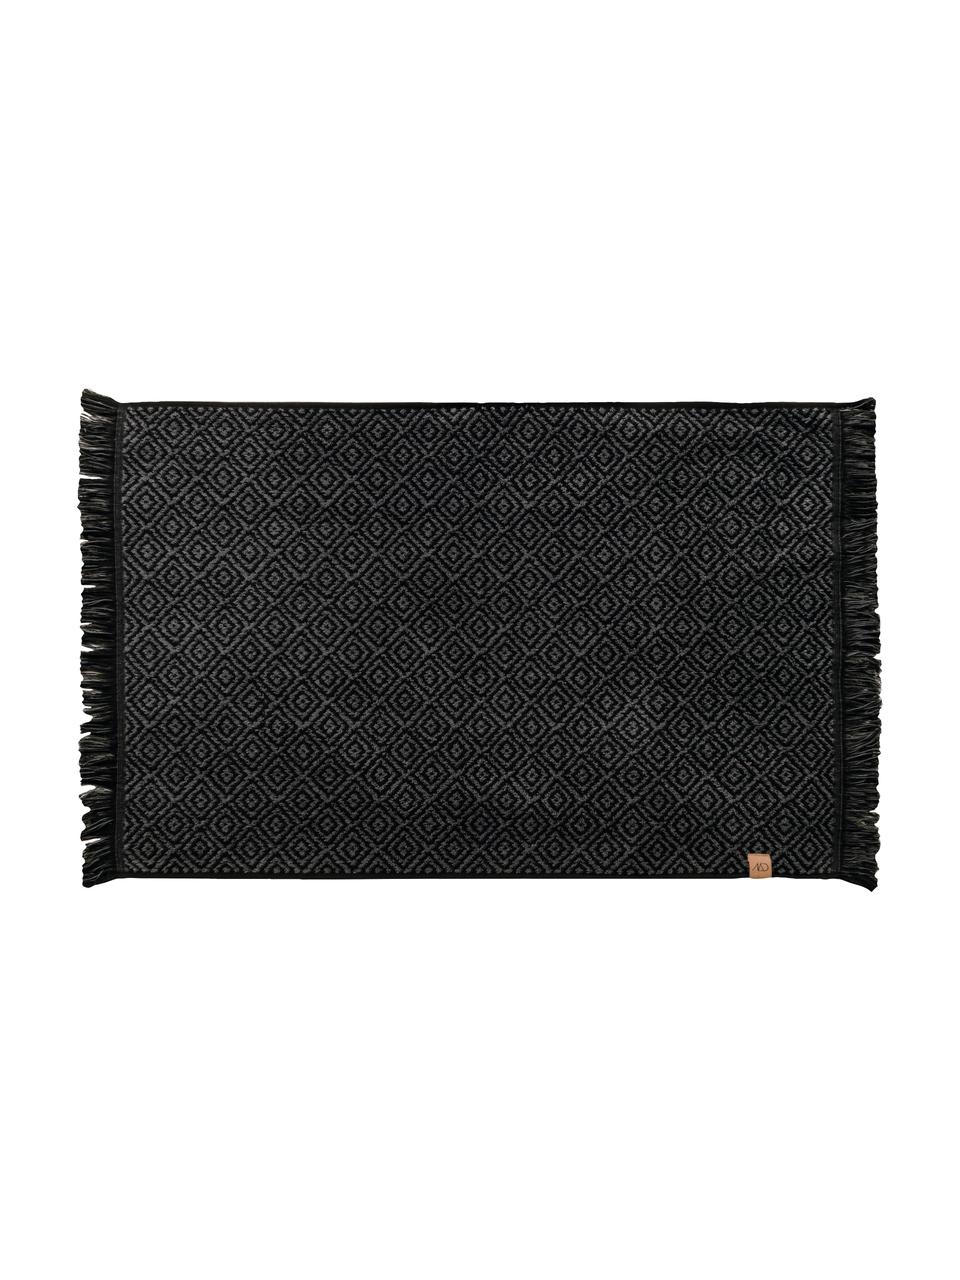 Tappeto bagno nero/grigio con motivo grafico Marocco, Cotone, Nero, grigio, Larg. 50 x Lung. 80 cm